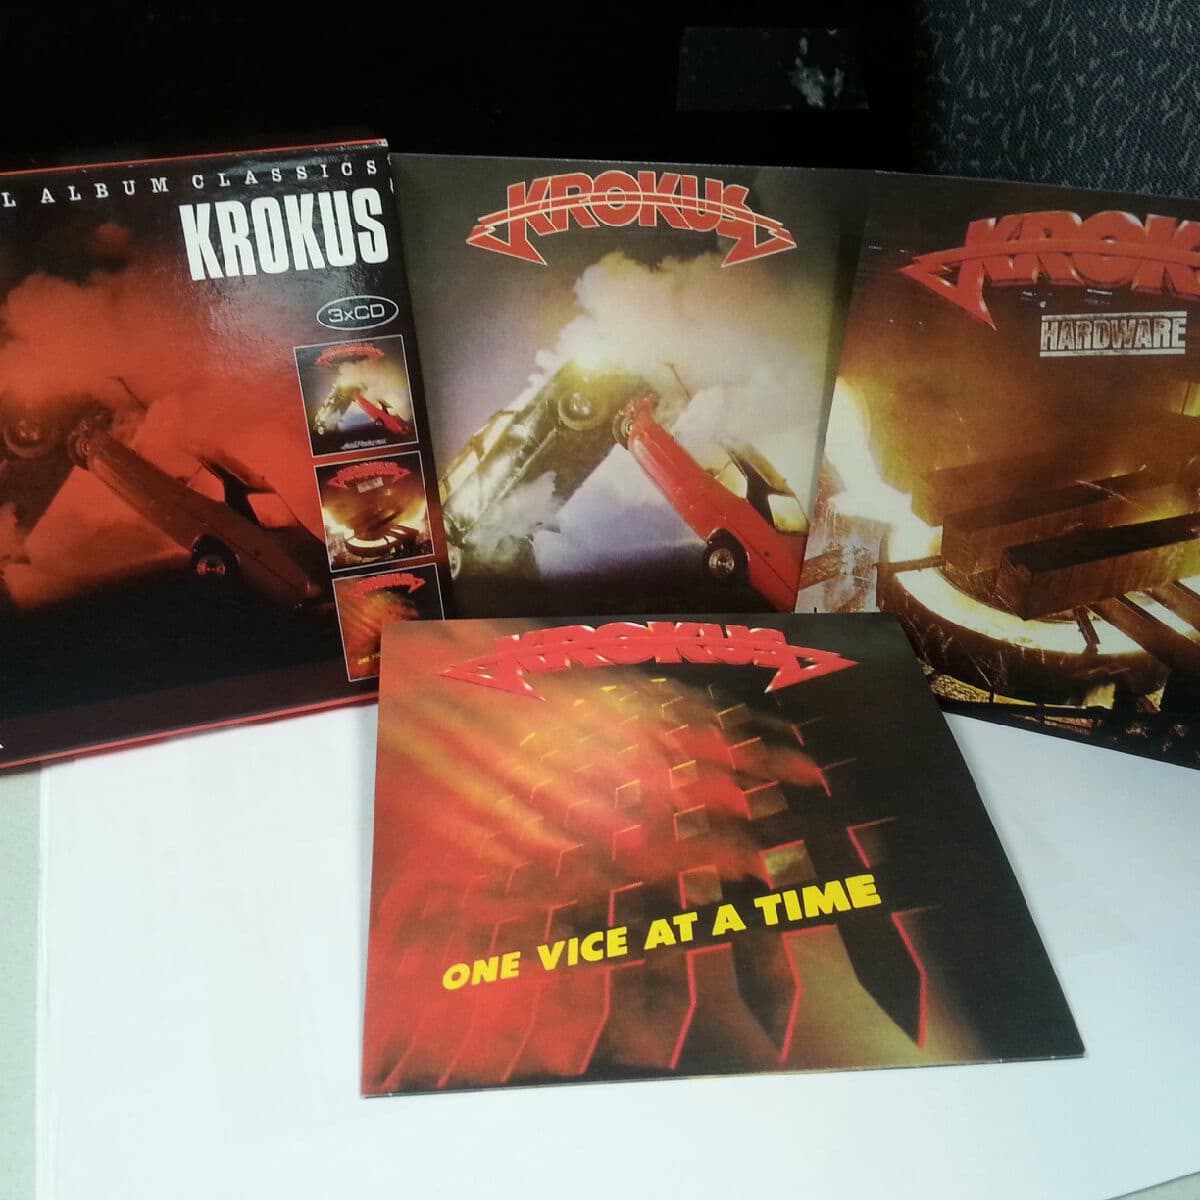 Альбом песен посвященный крокусу. Krokus - big eight 12-LP Box-Set. Krokus one vice album. Krokus "one vice at a time". Krokus big Rocks 2017.